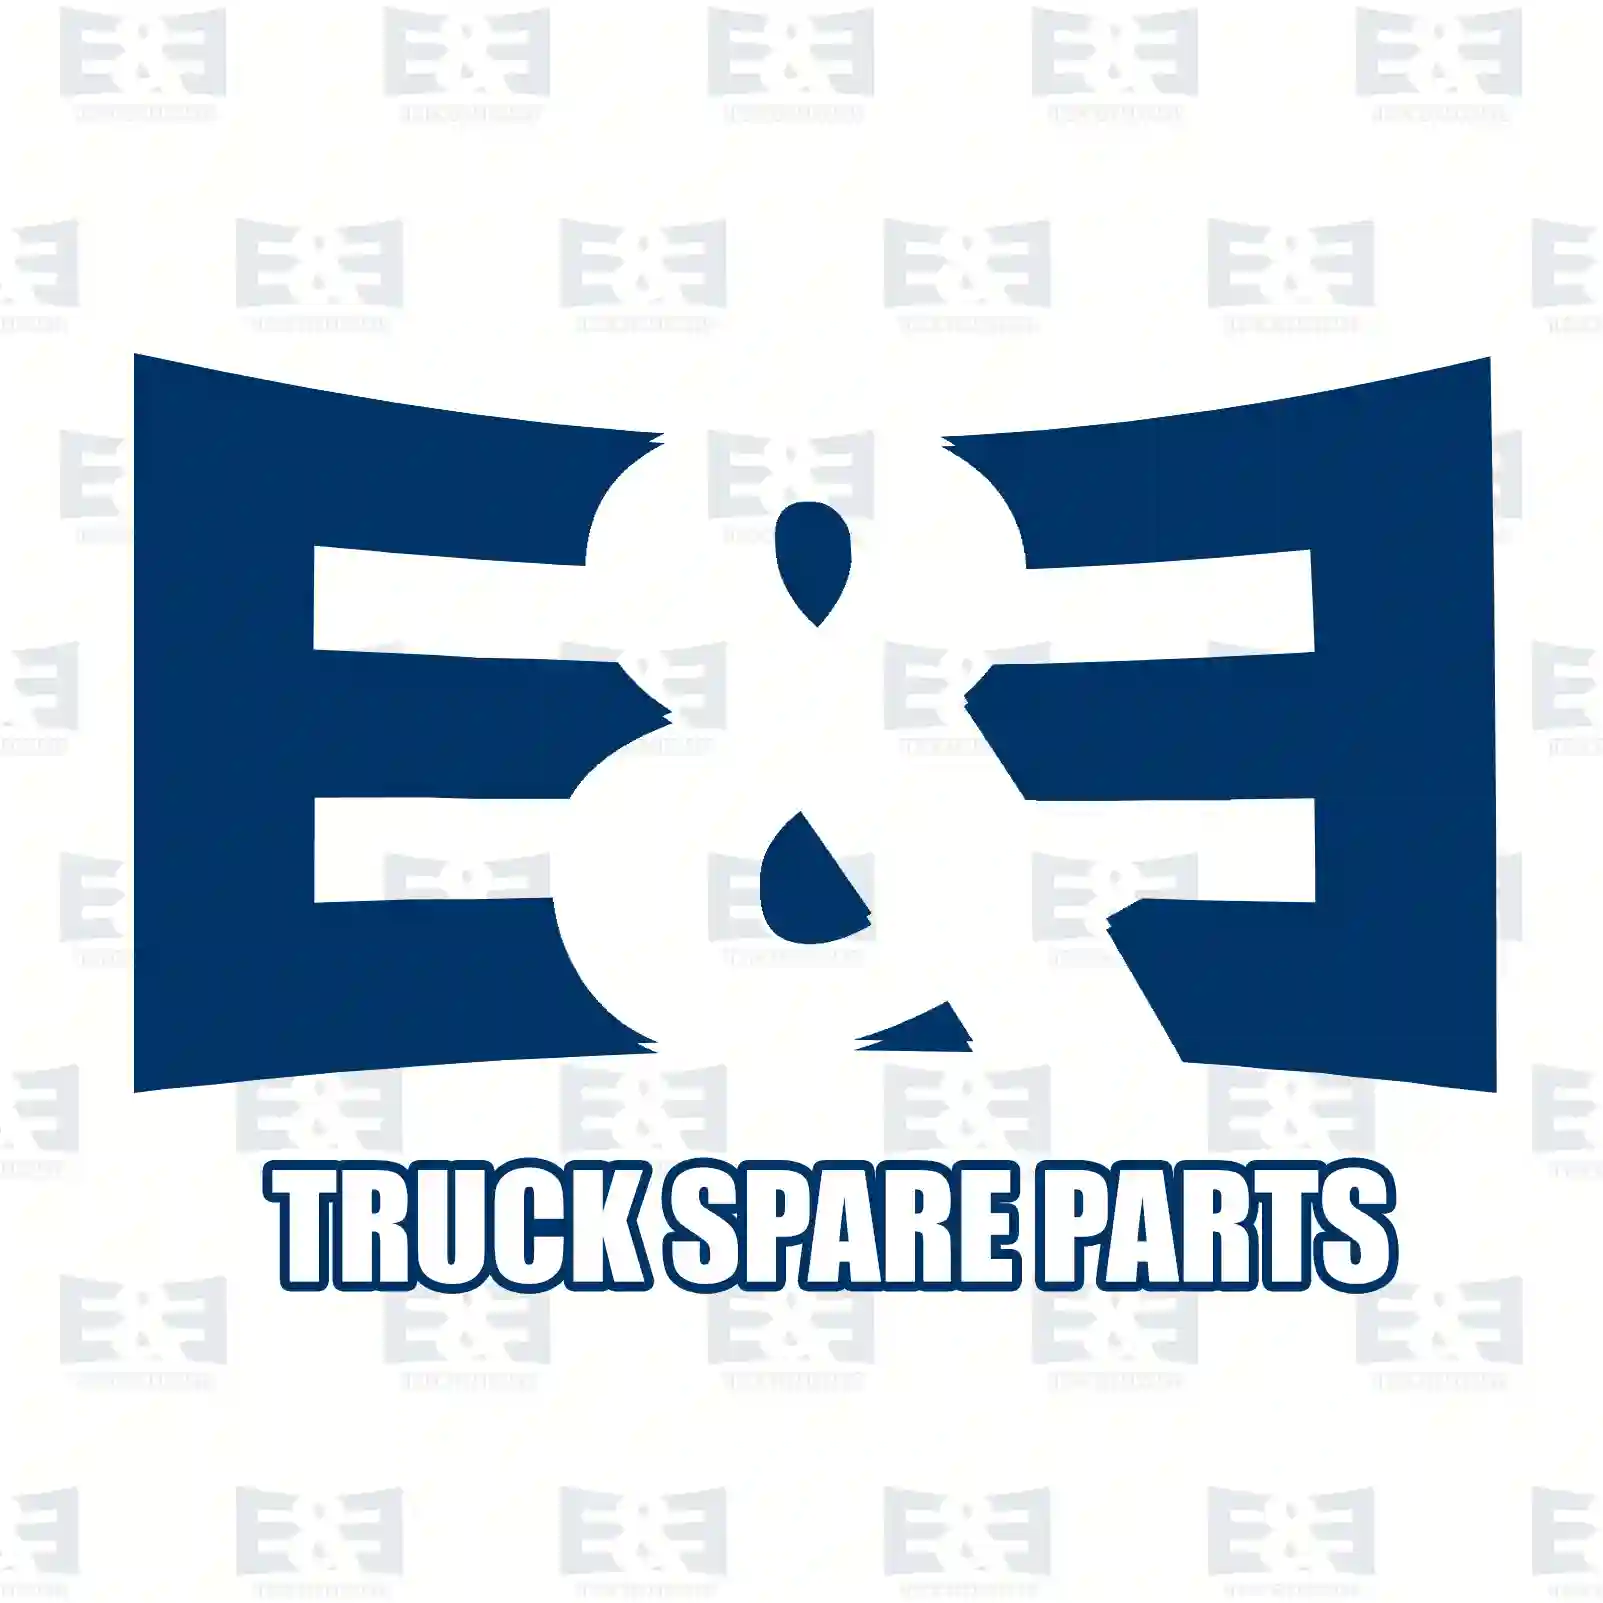 Hub Wheel hub, EE No 2E2284058 ,  oem no:330787, 330797, 3307A5, 51753218, 93501838, 93502106, 330787, 330797, 3307A5 E&E Truck Spare Parts | Truck Spare Parts, Auotomotive Spare Parts